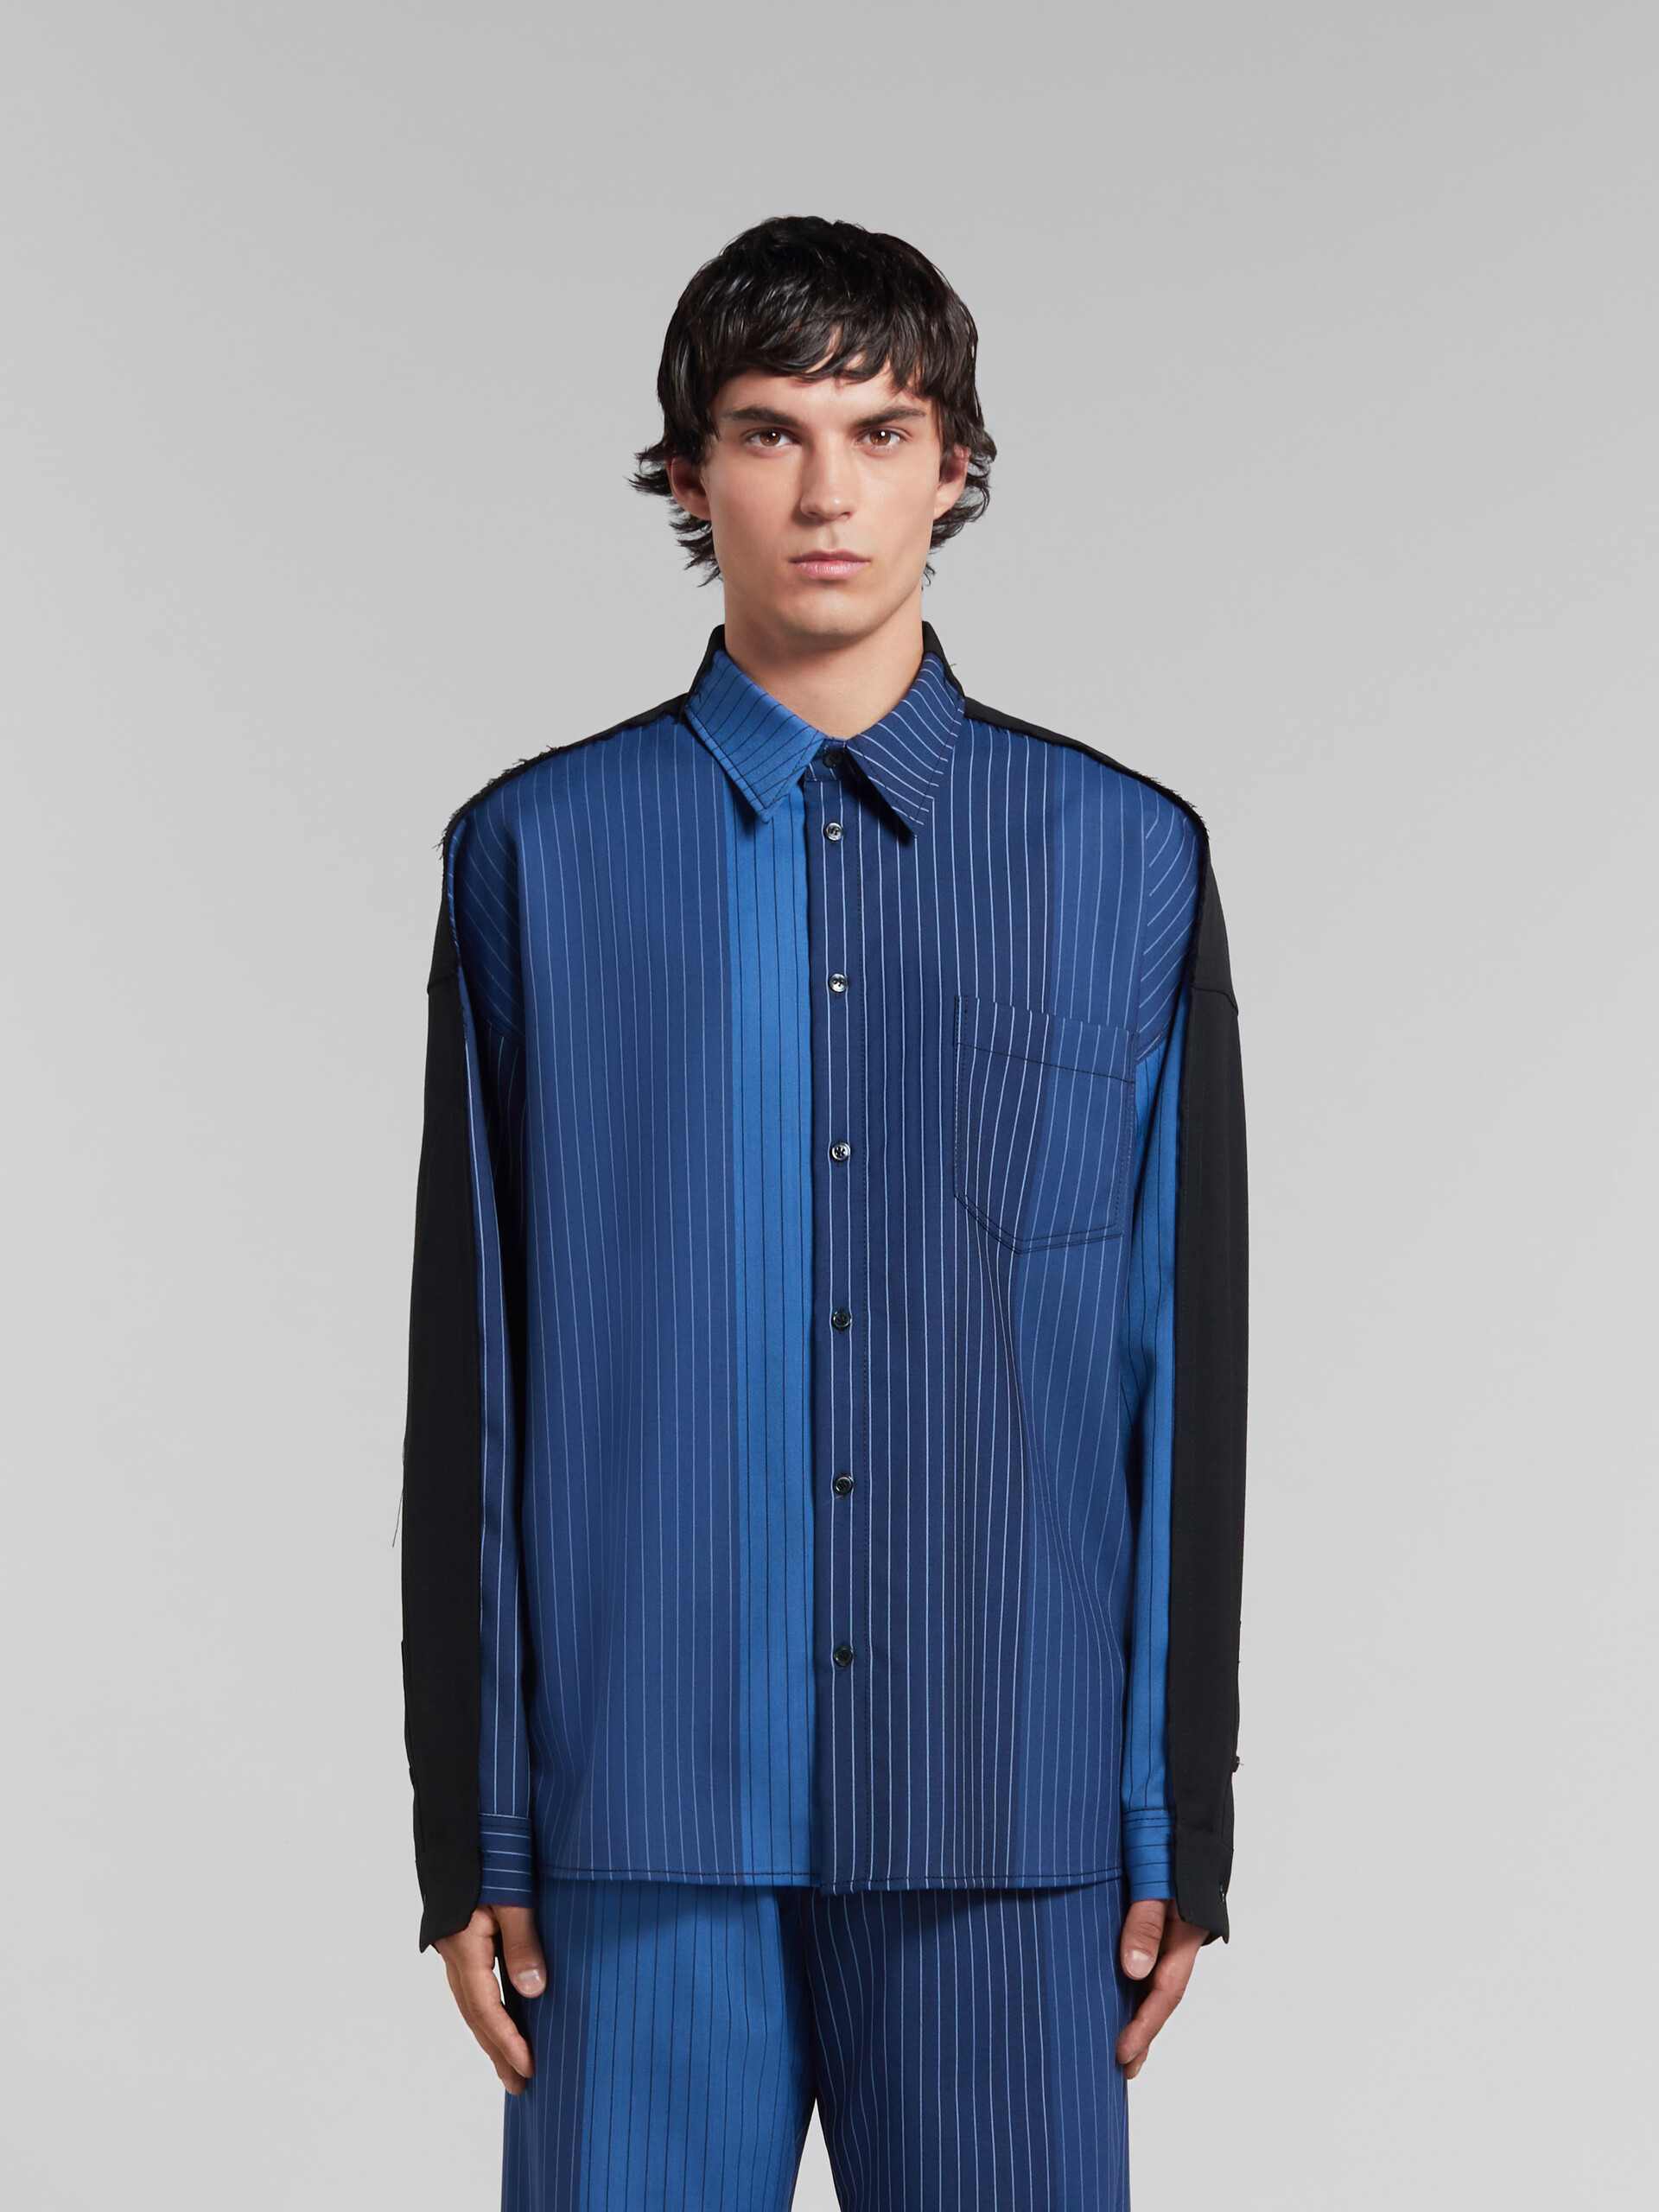 Camisa de lana azul degradado con raya diplomática y espalda en contraste - Camisas - Image 2